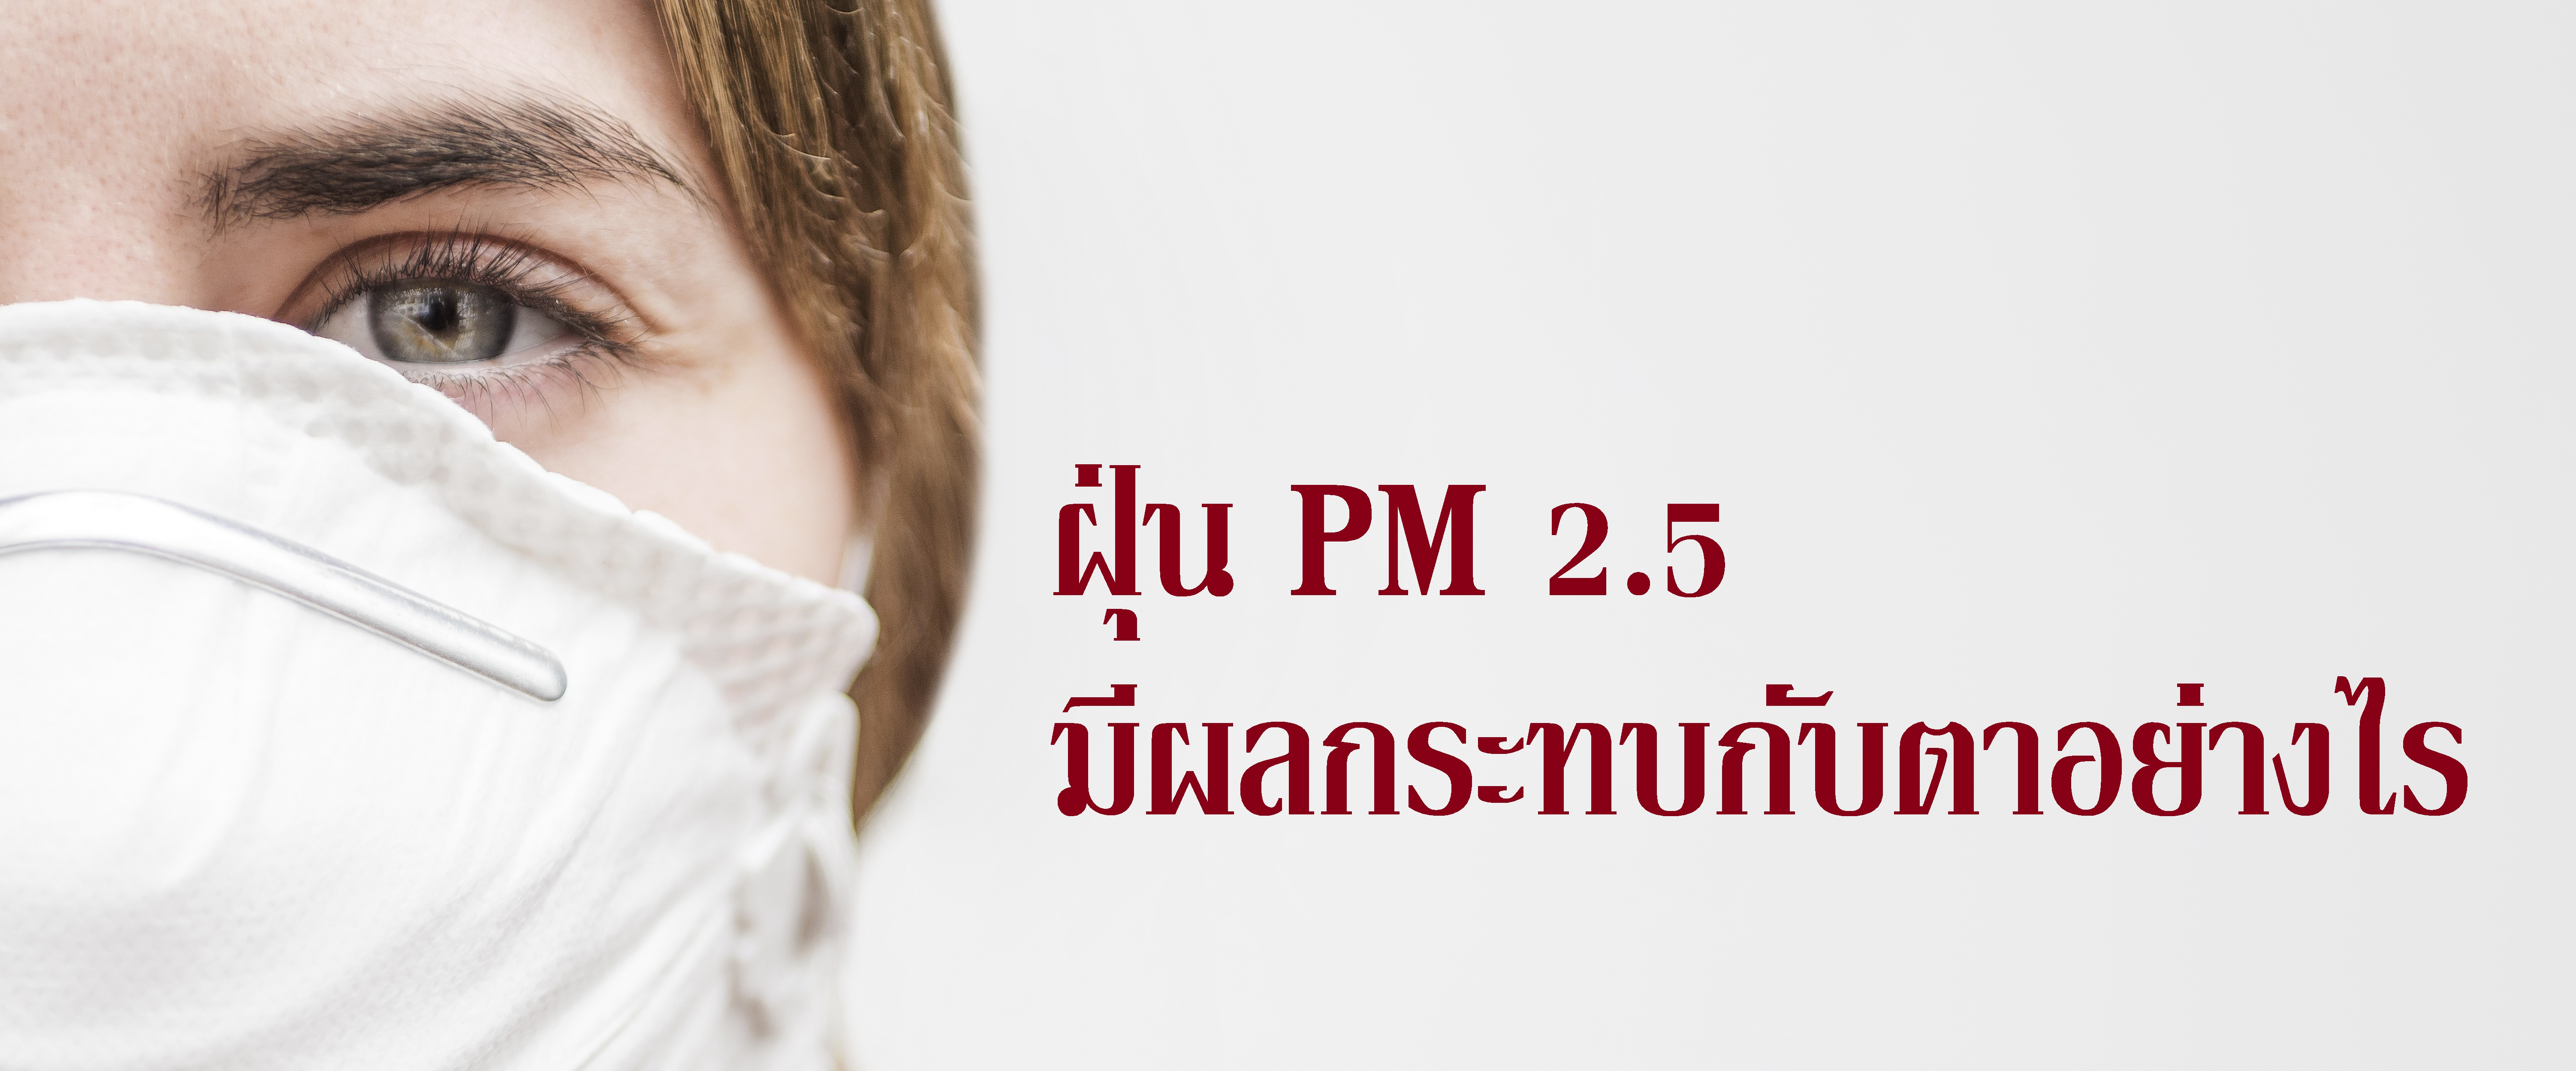 ฝุ่น PM 2.5 มีผลกระทบกับตาอย่างไร